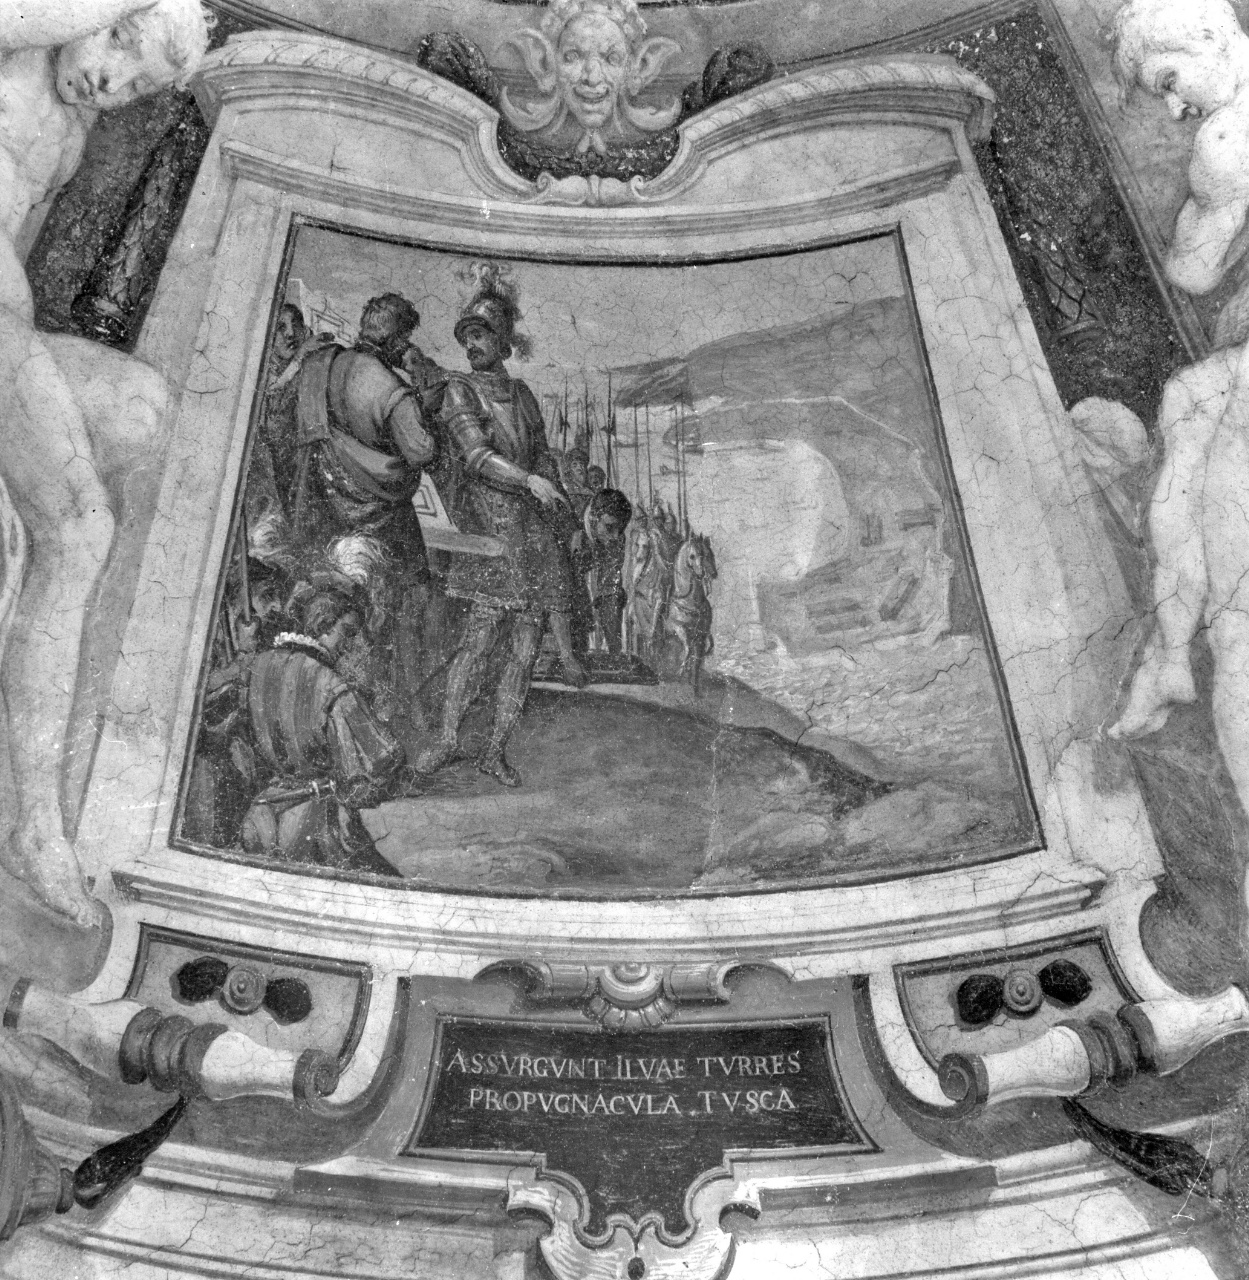 Le Fortificazioni dell'isola d'Elba, episodi della vita di Cosimo I de' Medici (dipinto) di Barbatelli Bernardino detto Poccetti (attribuito) (sec. XVII)